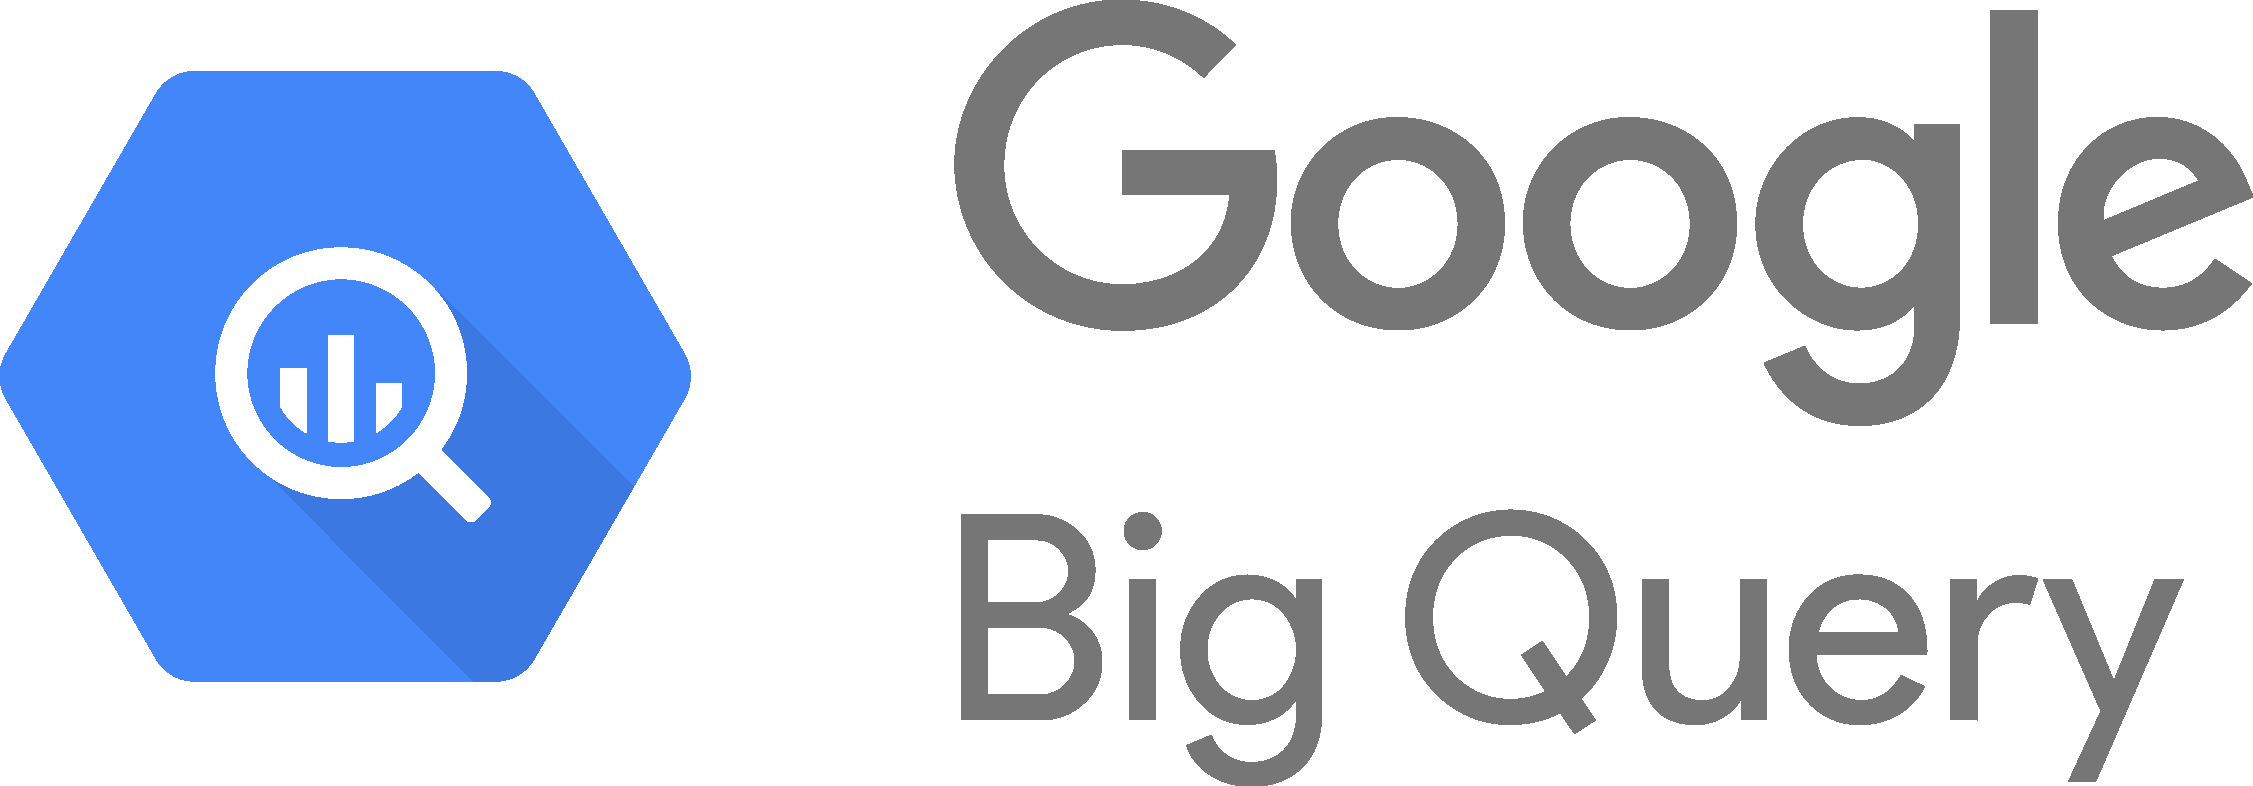 Google Big Query Logo png